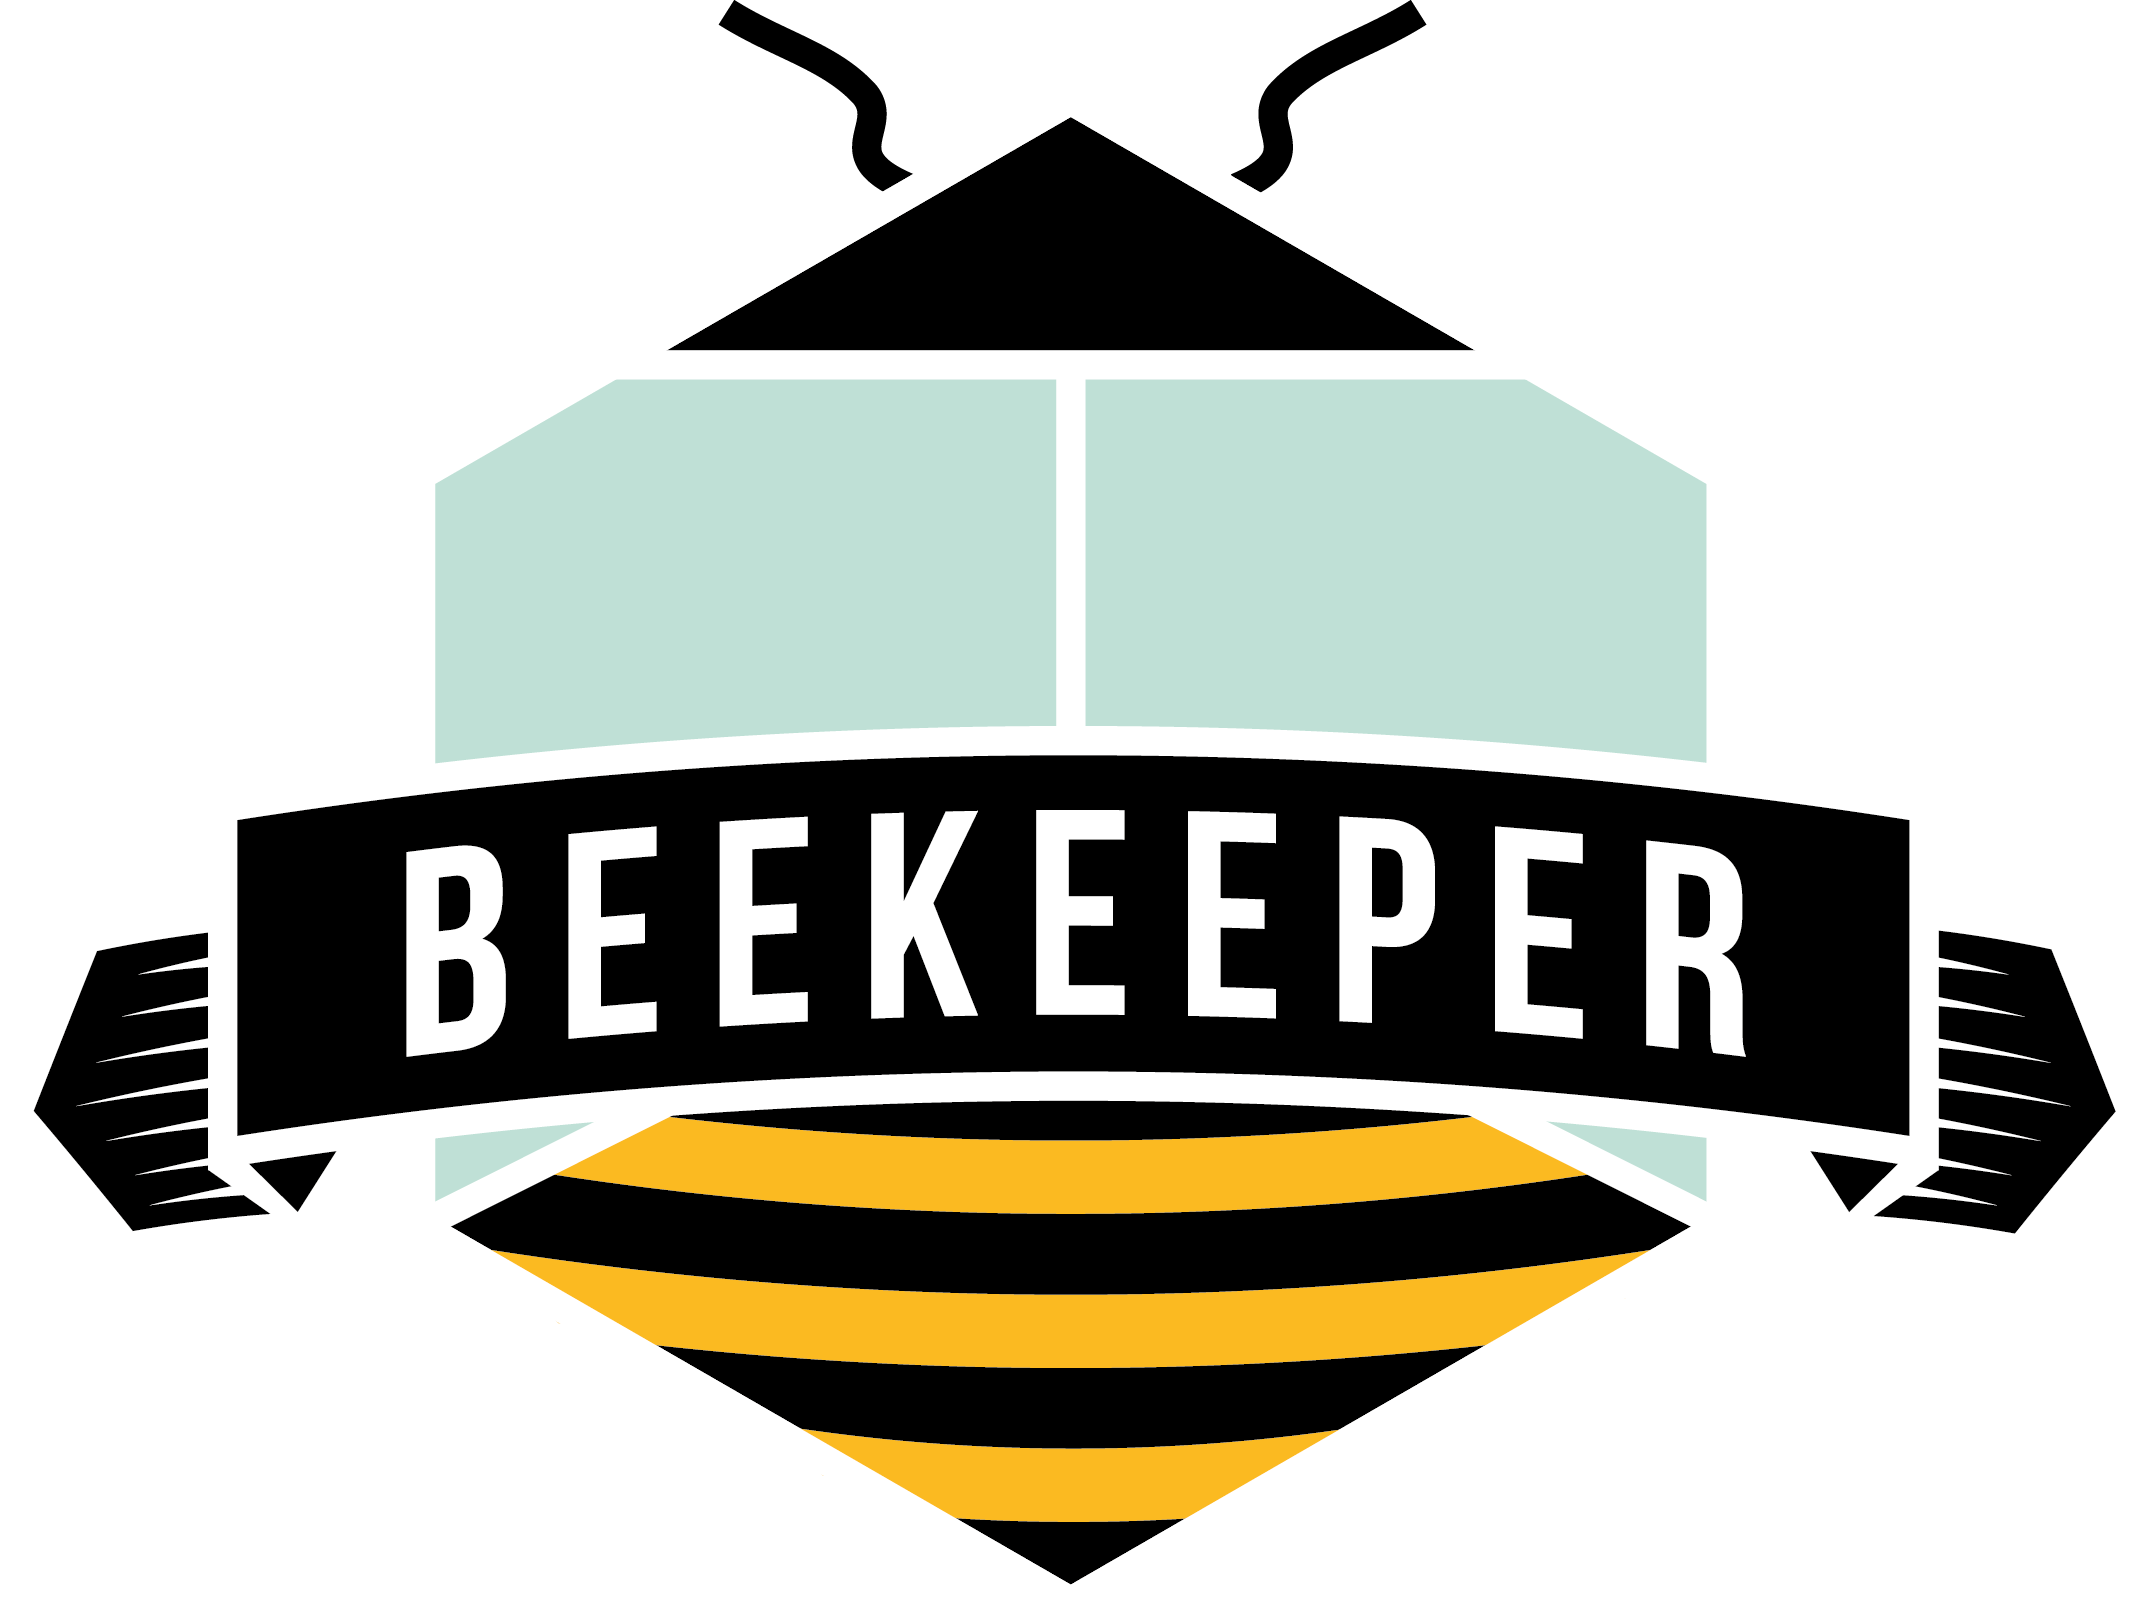 Beekeeper Logo Svart2 - Beekeeper (2145x1618)